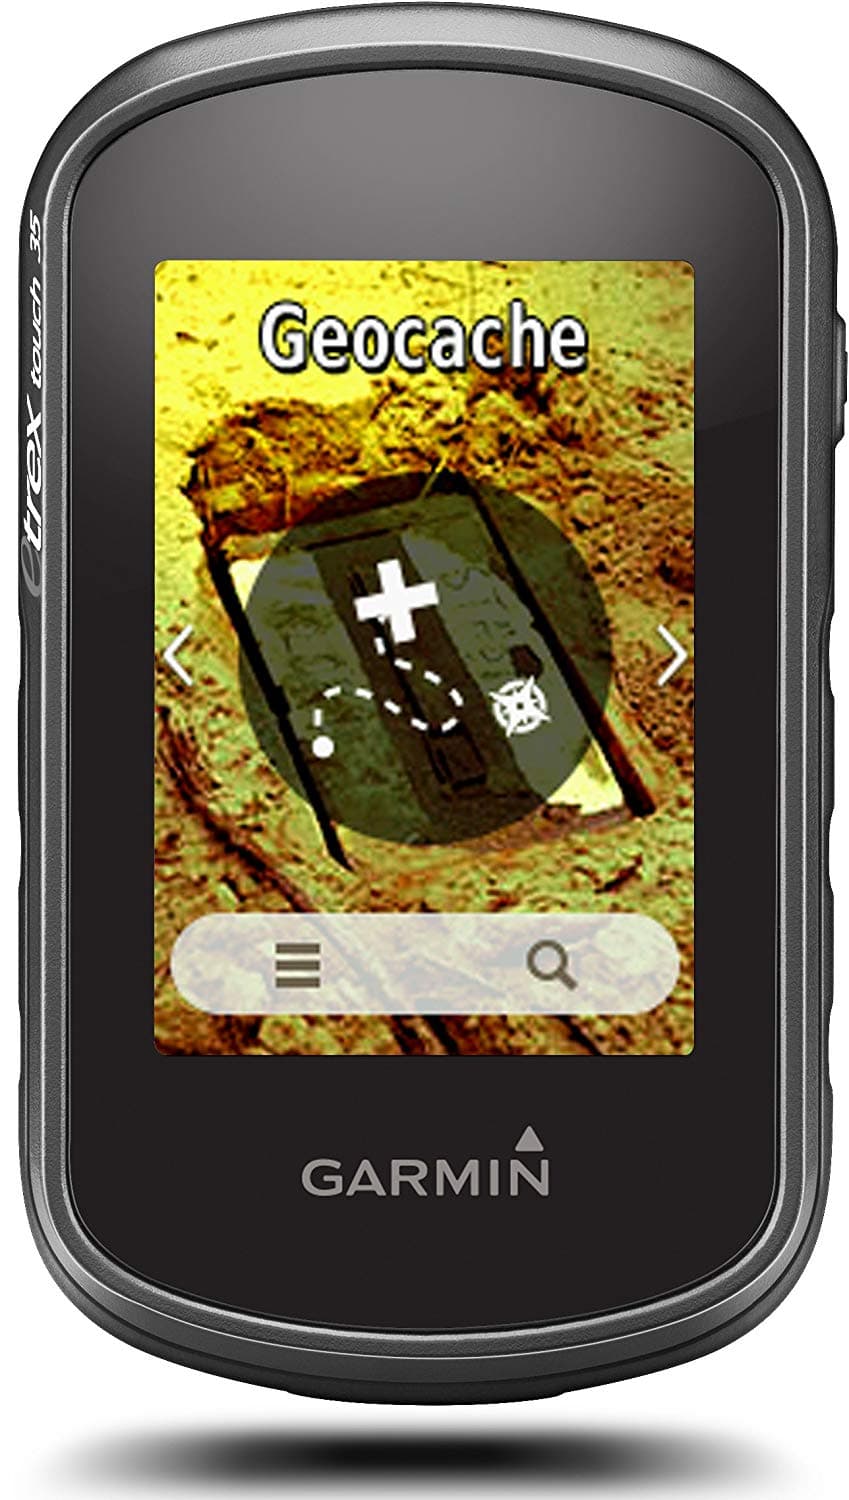 GPS etrex 35 geocaching